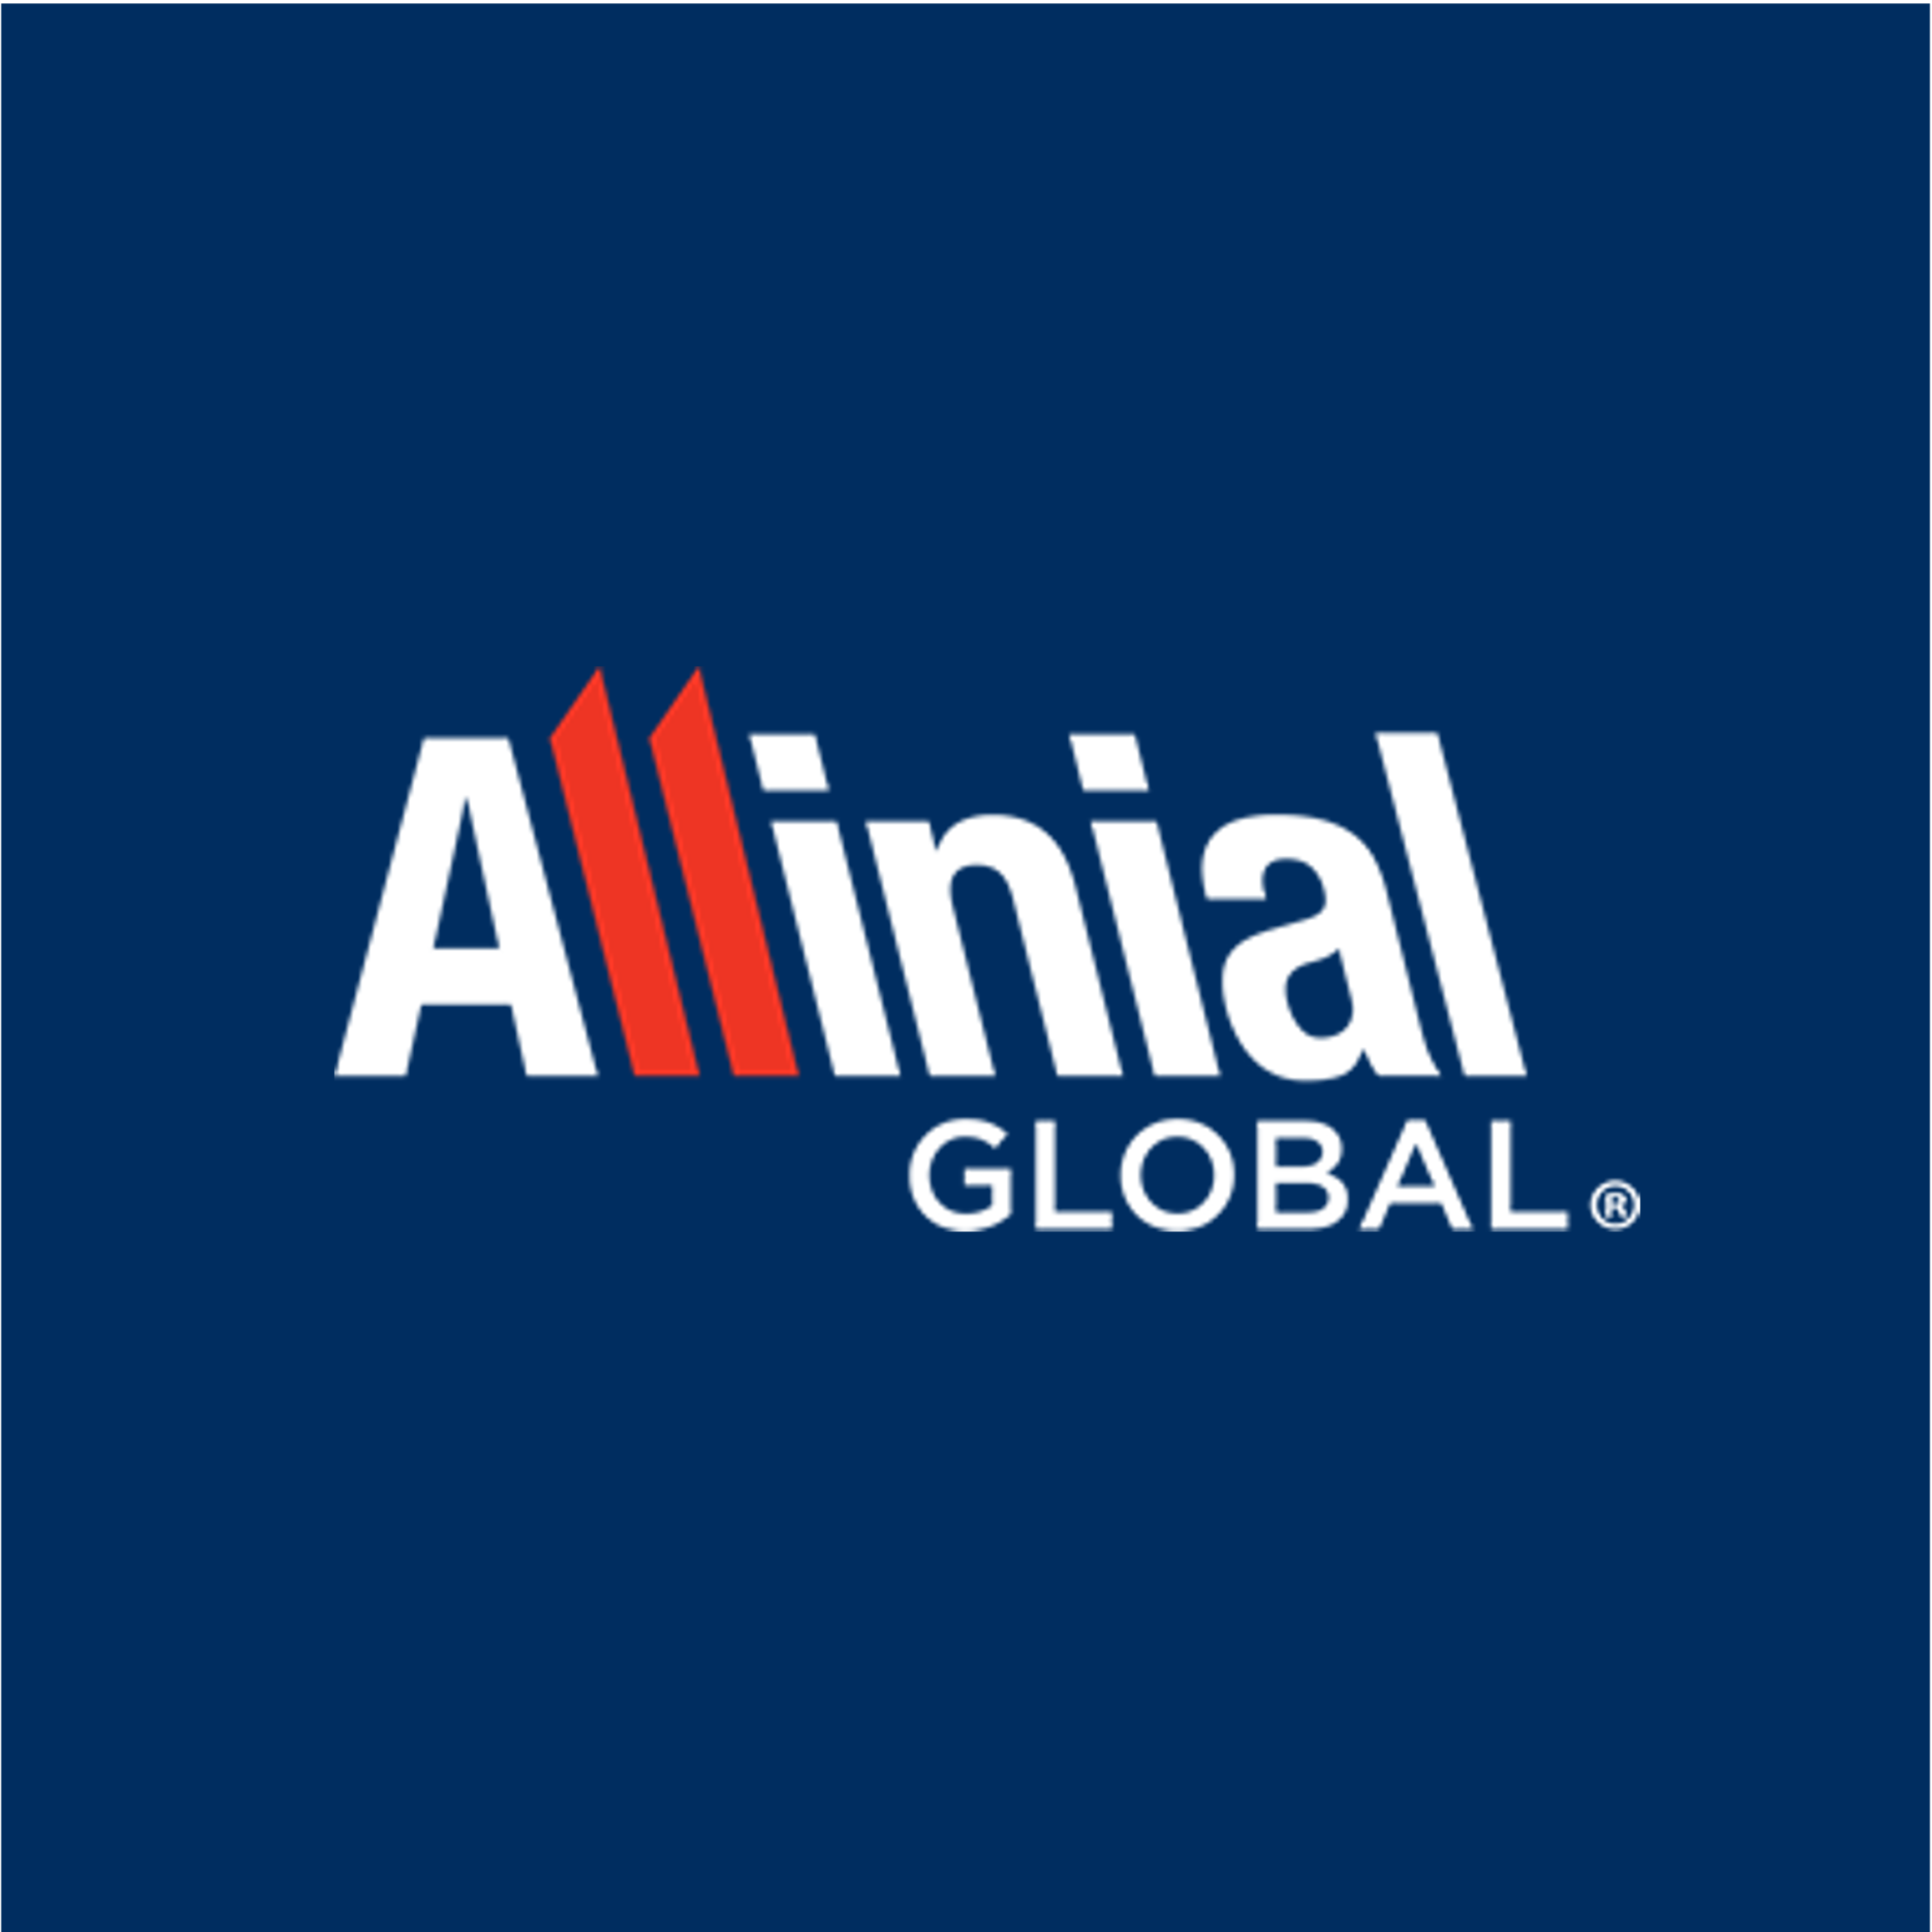 allinial